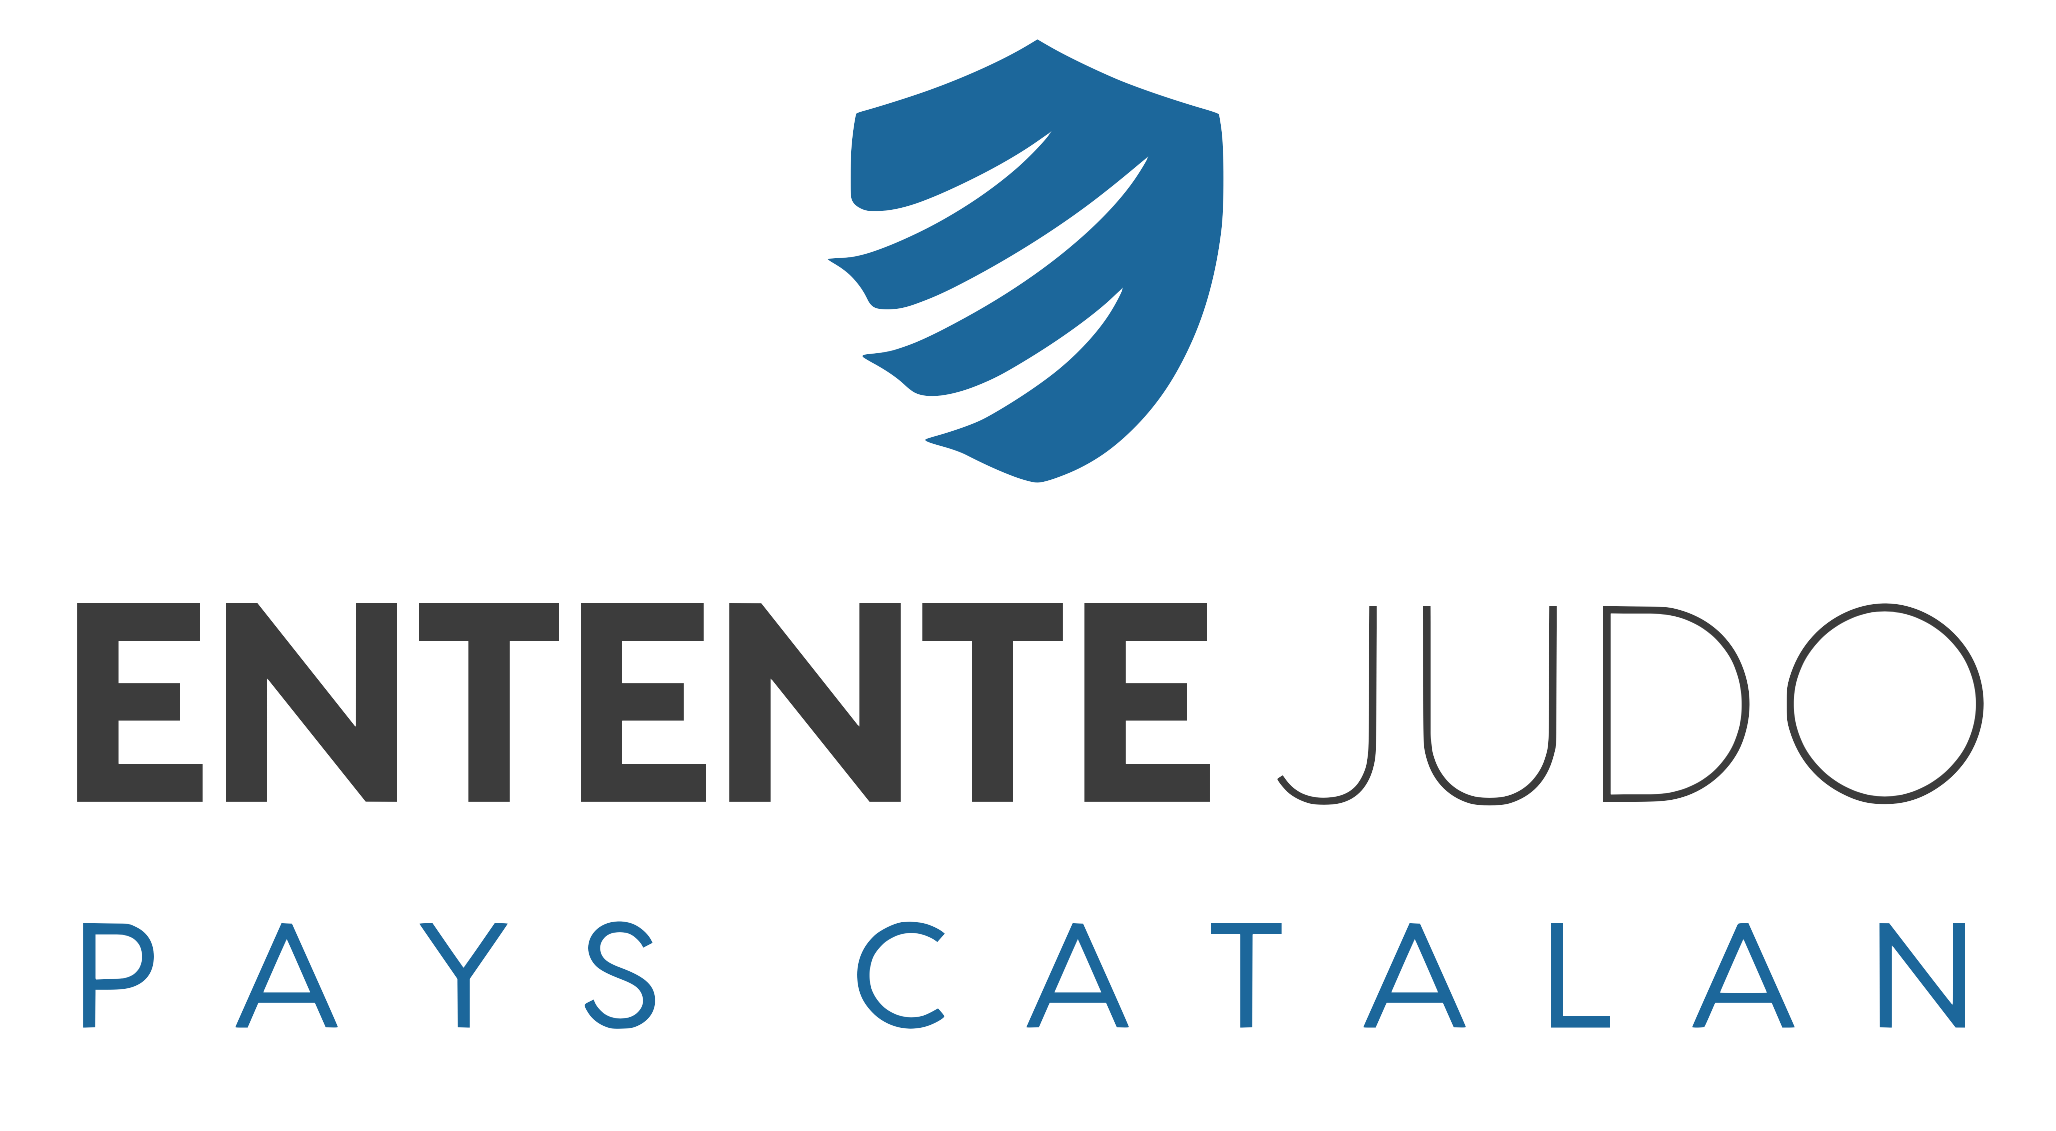 Entente judo pays catalan logo